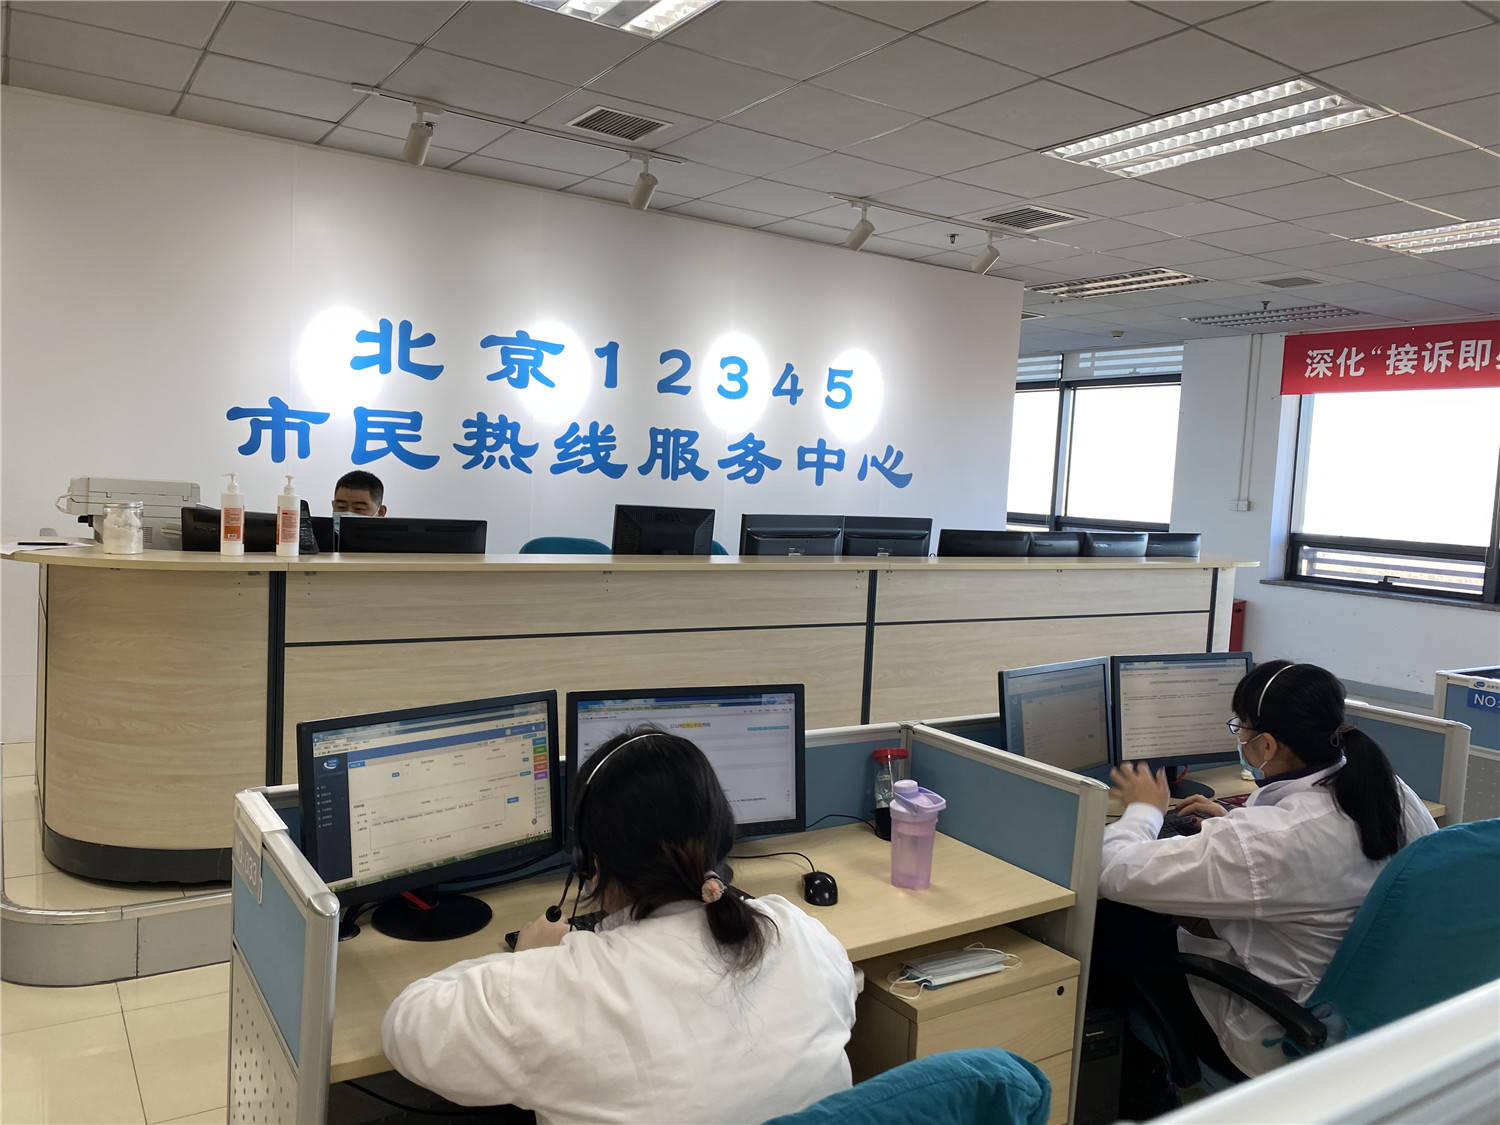 新华社记者 罗鑫 摄2020年12月,北京12345市民热线服务中心迎来